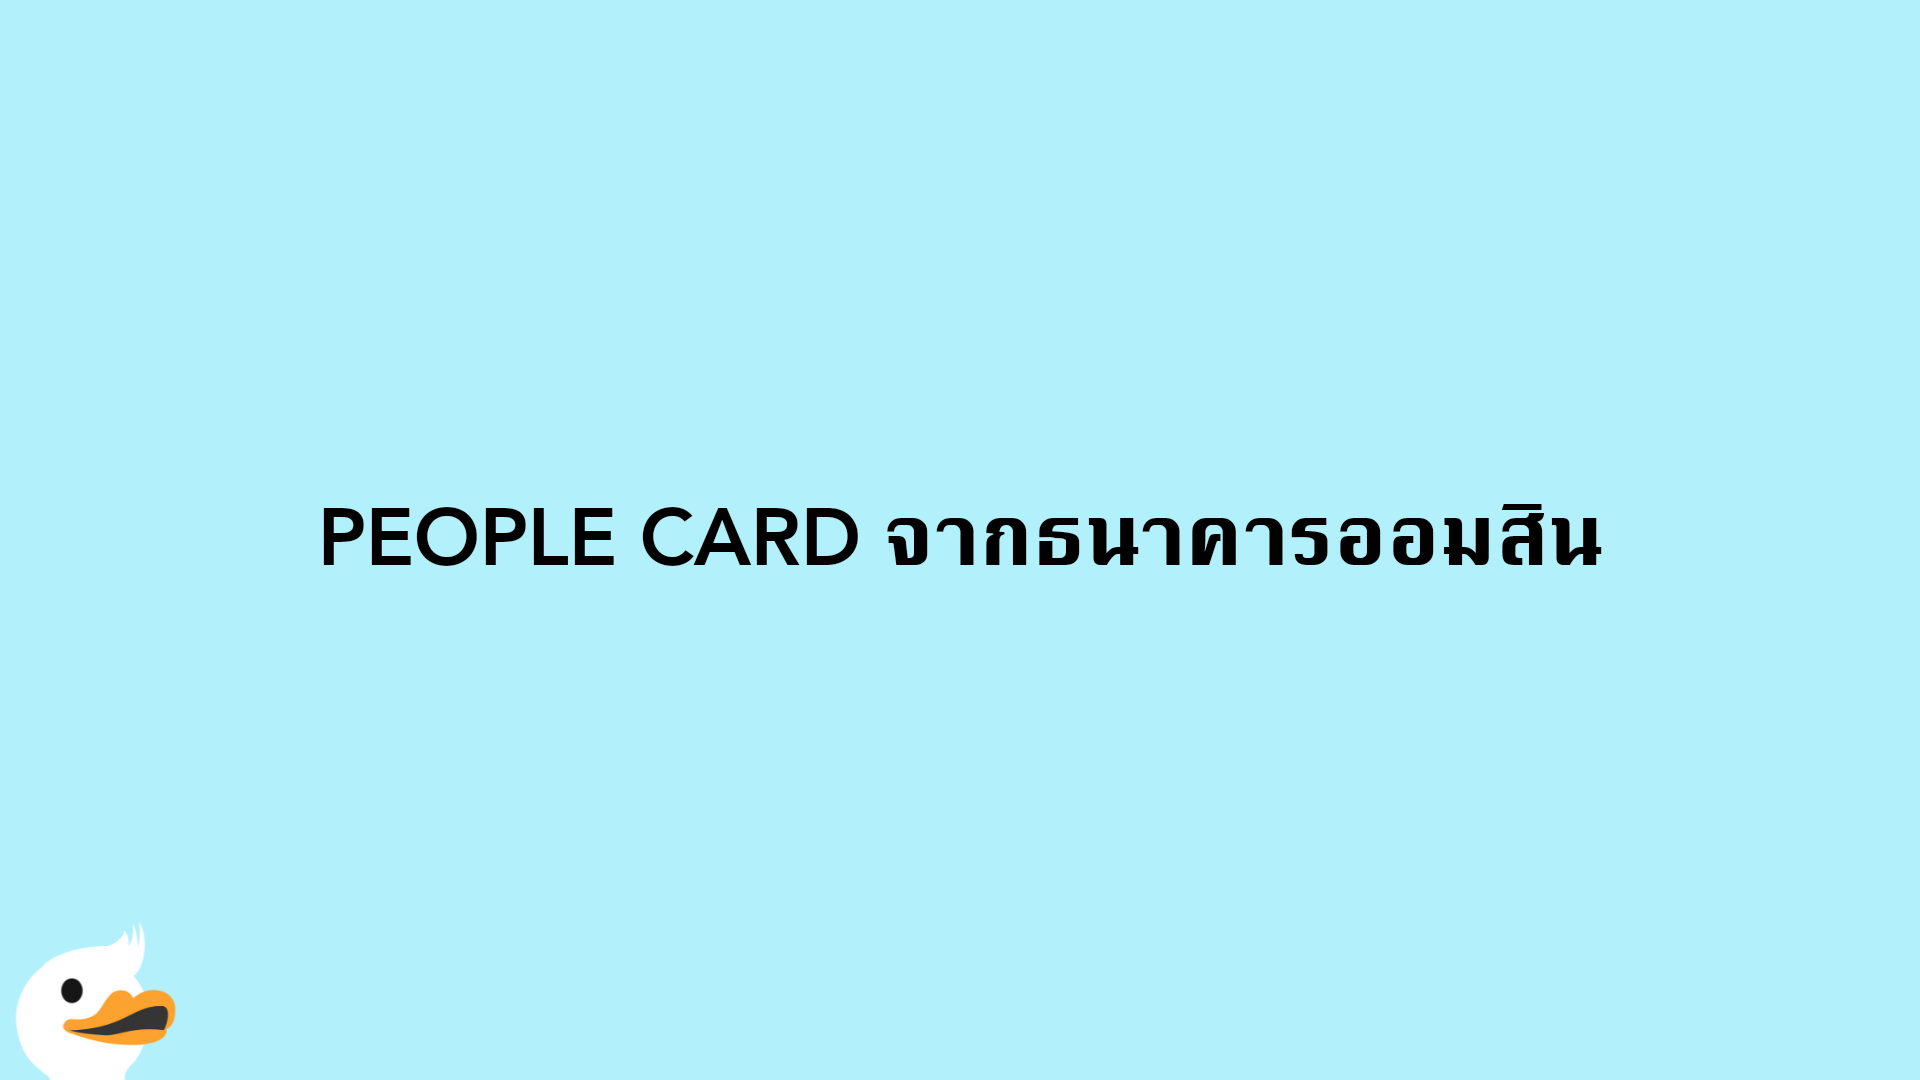 PEOPLE CARD จากธนาคารออมสิน